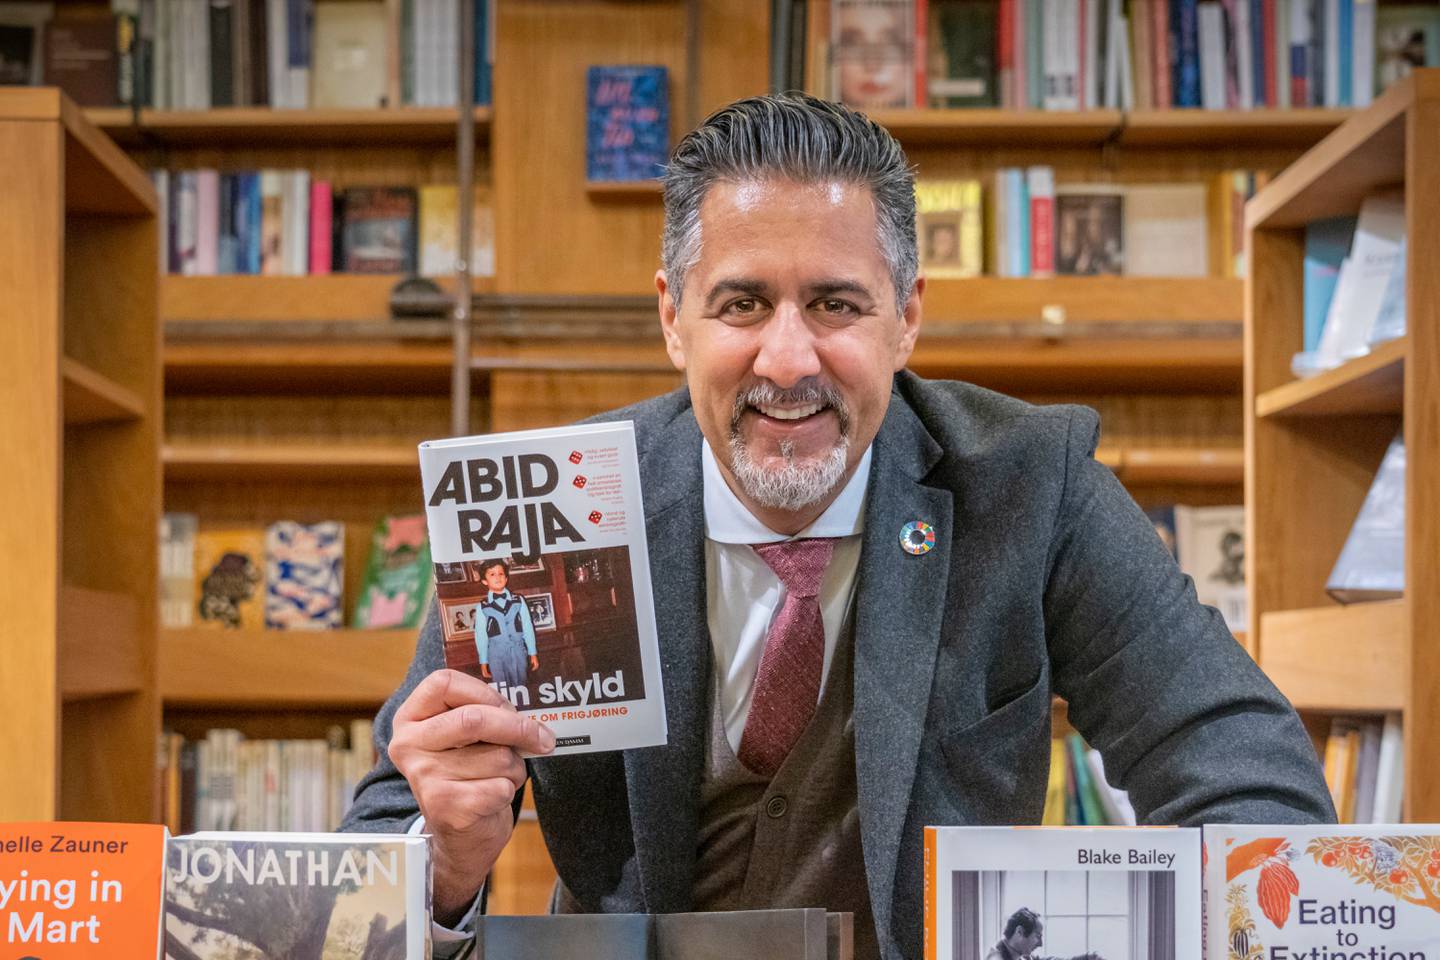 Abid Raja vant fjorårets Bokhandlerpris med boka «Min skyld». Her fotografert på Litteraturhuset i Oslo.
Foto: Ole Berg-Rusten / NTB